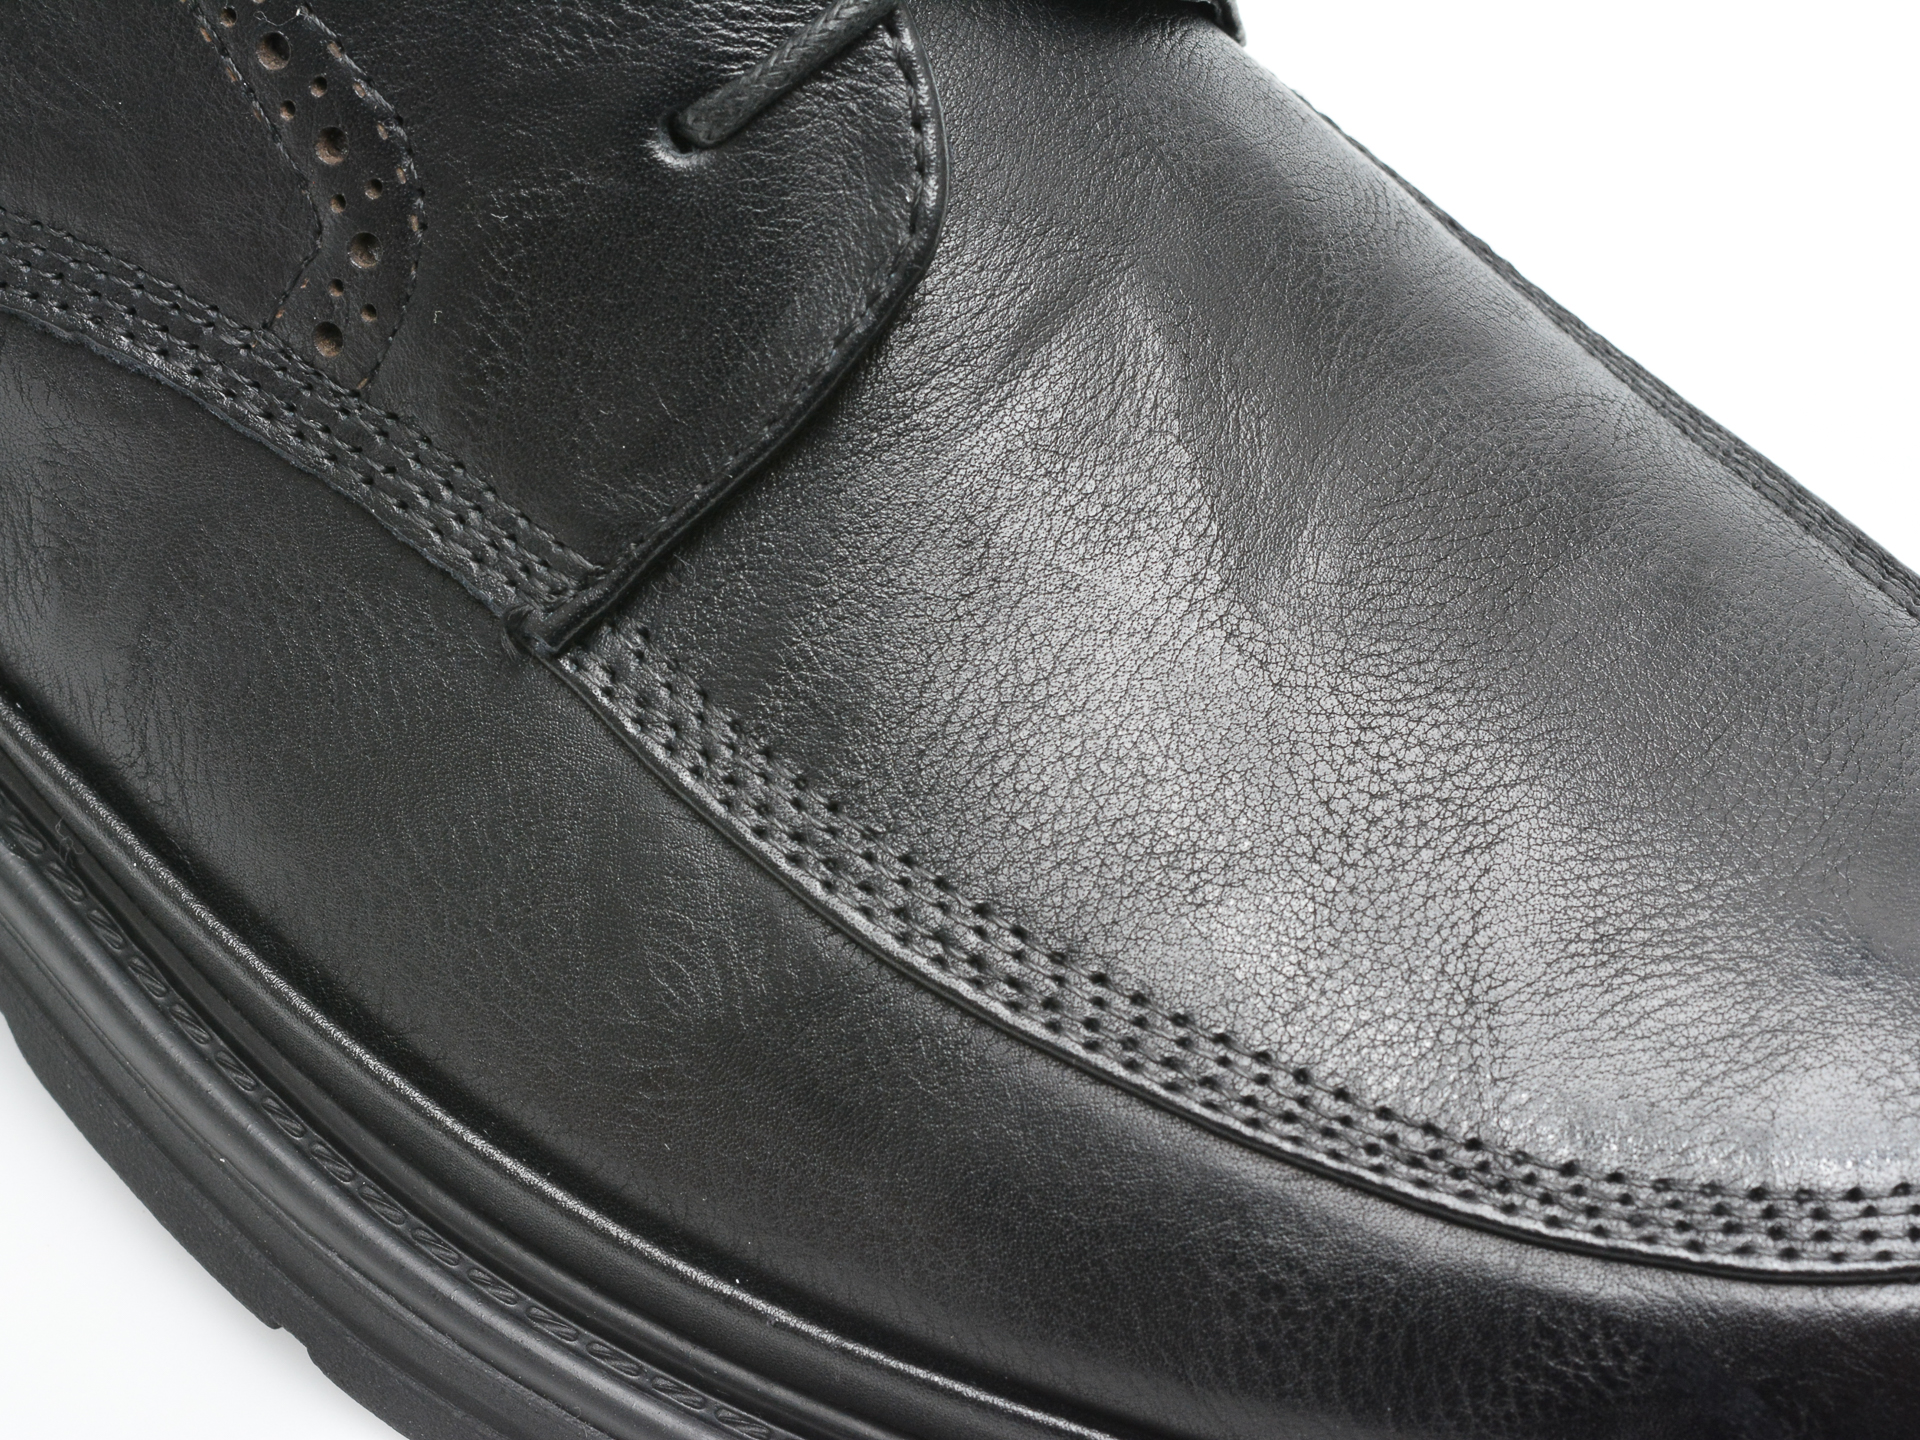 Poze Pantofi OTTER negri, E620005, din piele naturala Tezyo